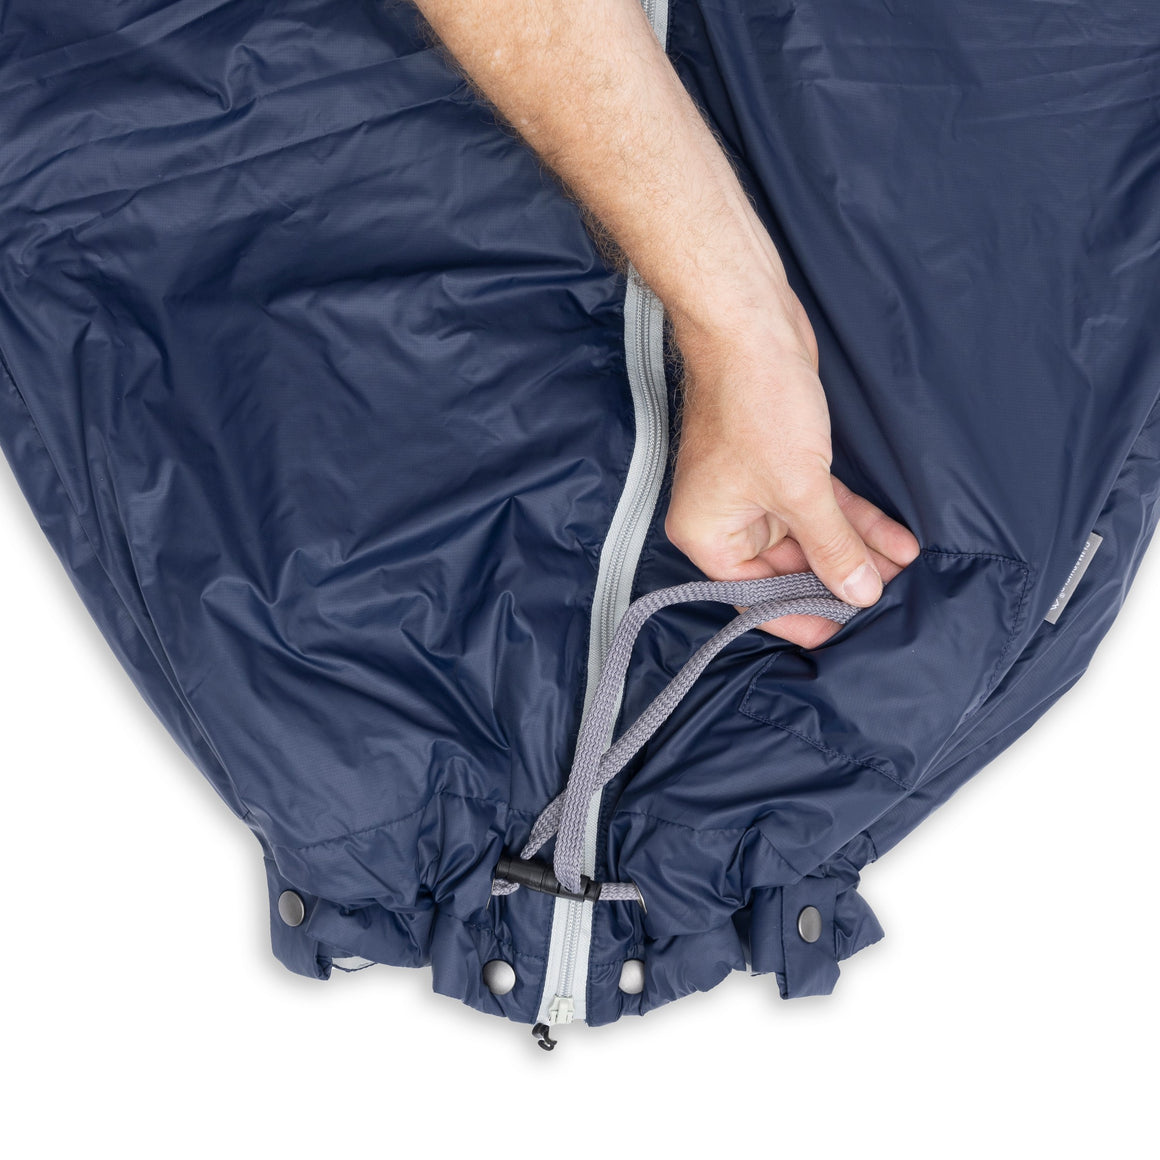 CozyBag Light - our lightweight sleeping bag